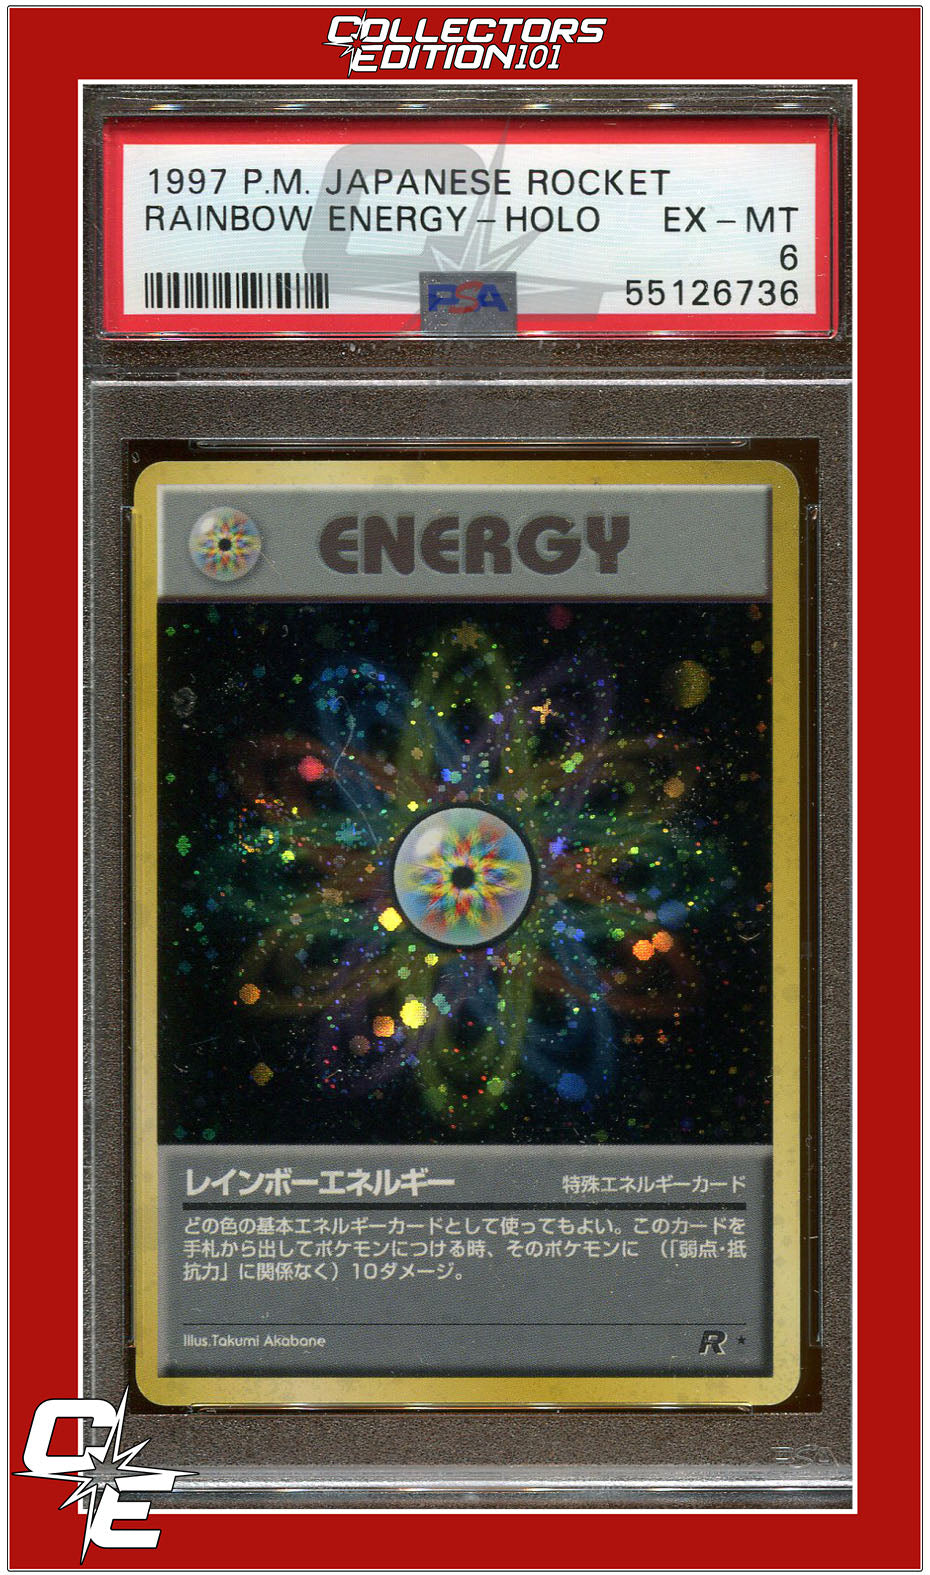 Japanese Rocket Rainbow Energy Holo PSA 6